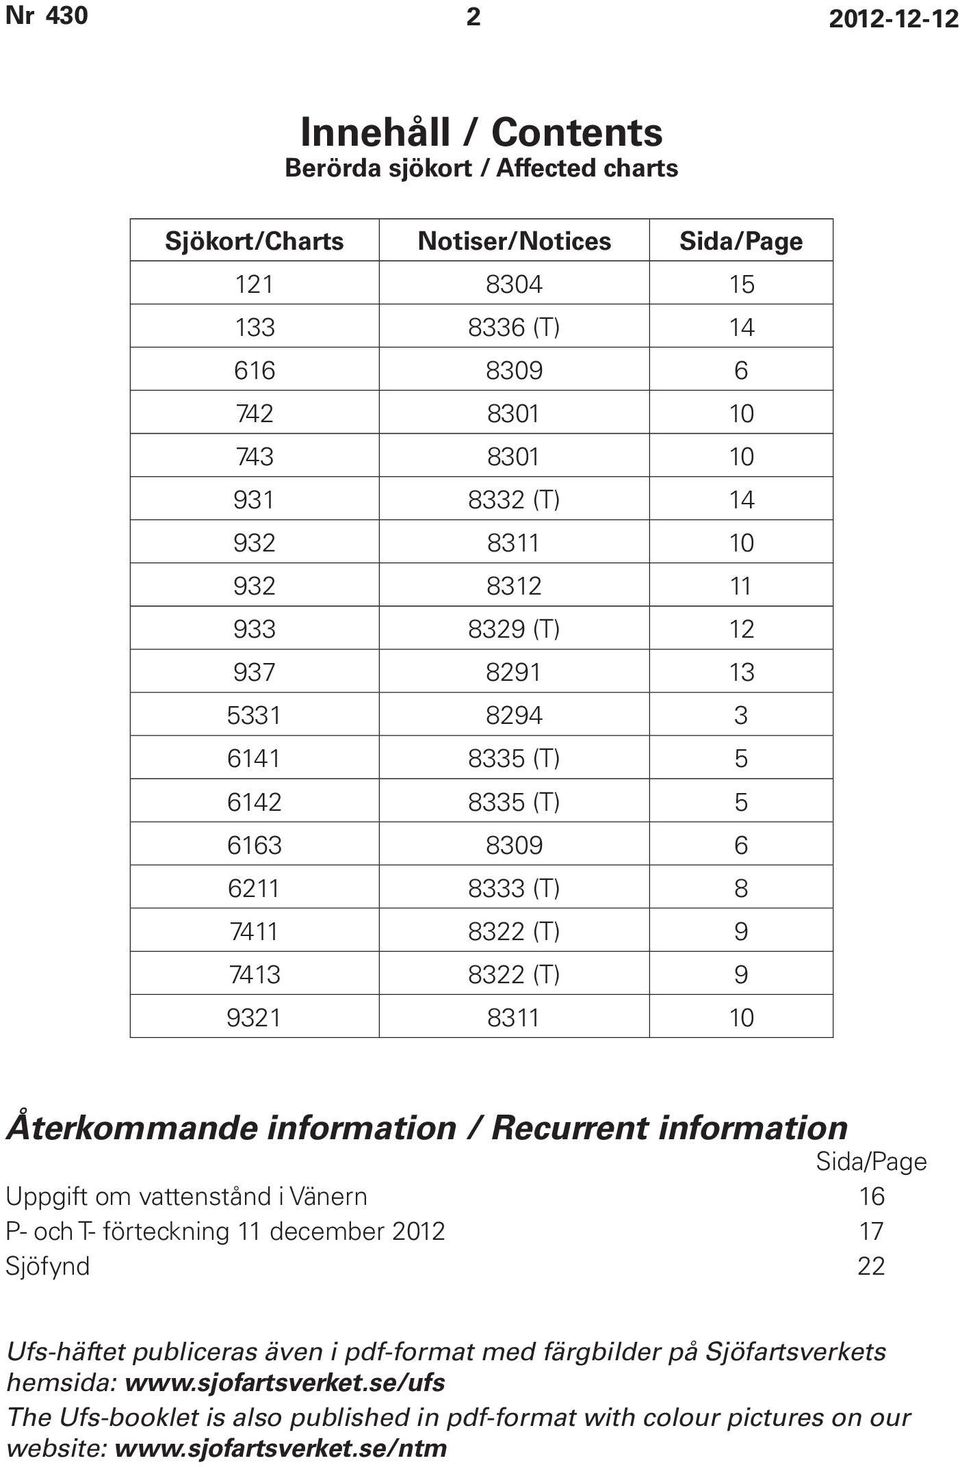 Återkommande information / Recurrent information Sida/Page Uppgift om vattenstånd i Vänern 16 P- och T- förteckning 11 december 2012 17 Sjöfynd 22 Ufs-häftet publiceras även i